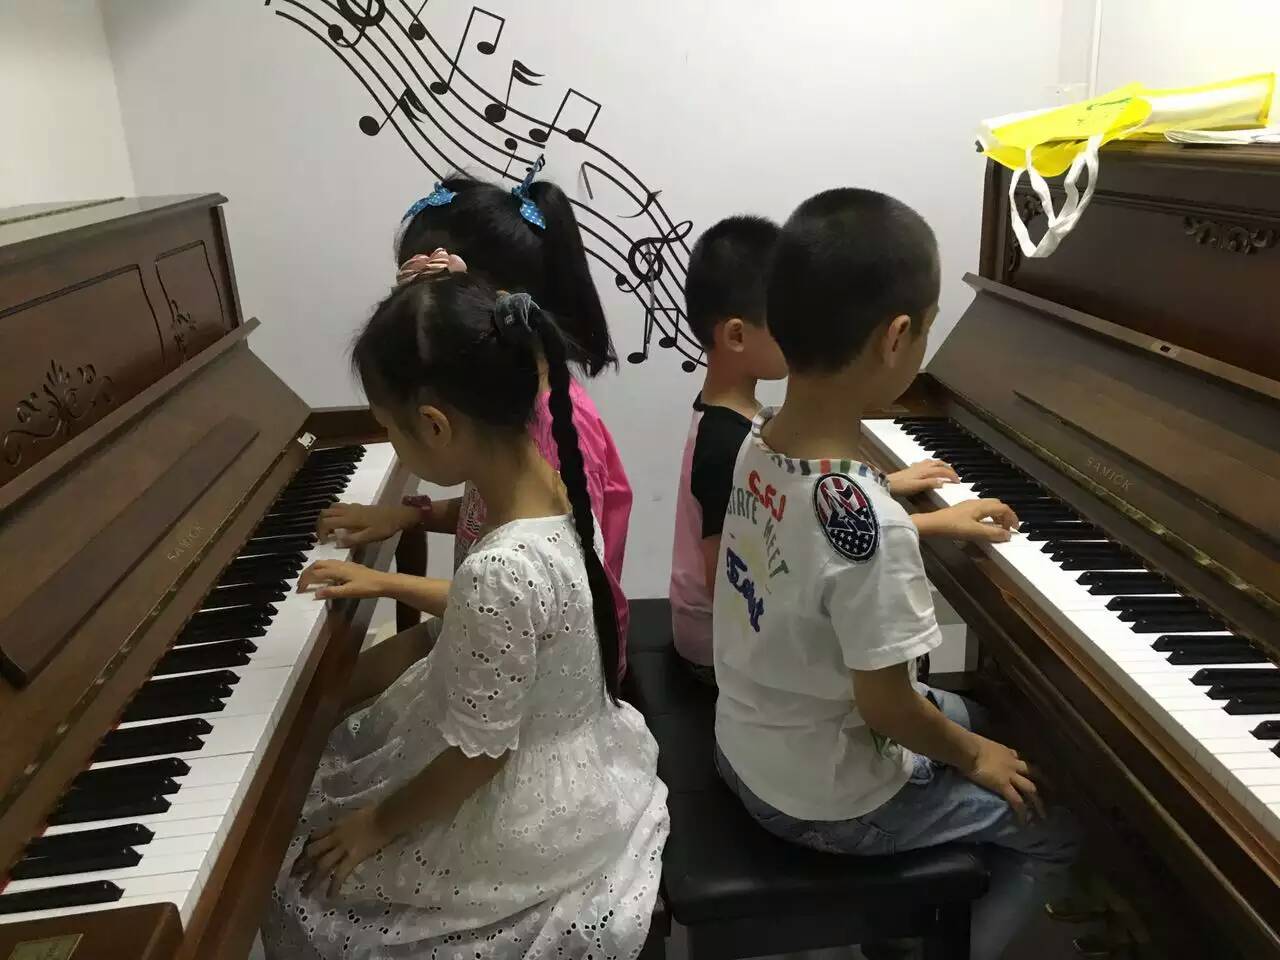 【我家女儿今年四岁了想送她去学钢琴,哪里有